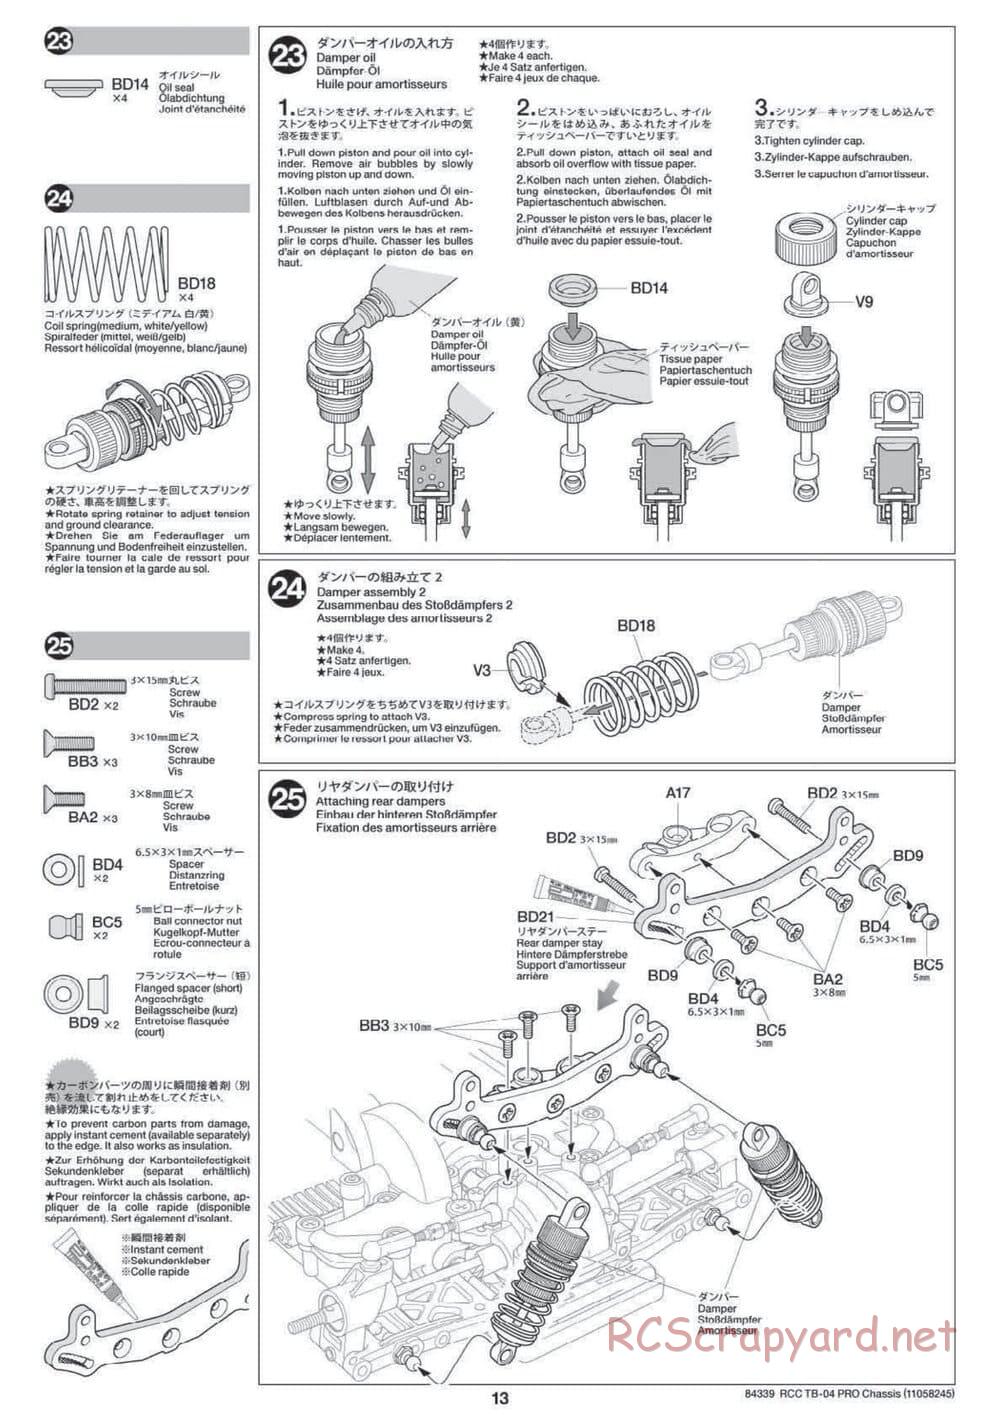 Tamiya - TB-04 Pro Chassis - Manual - Page 13